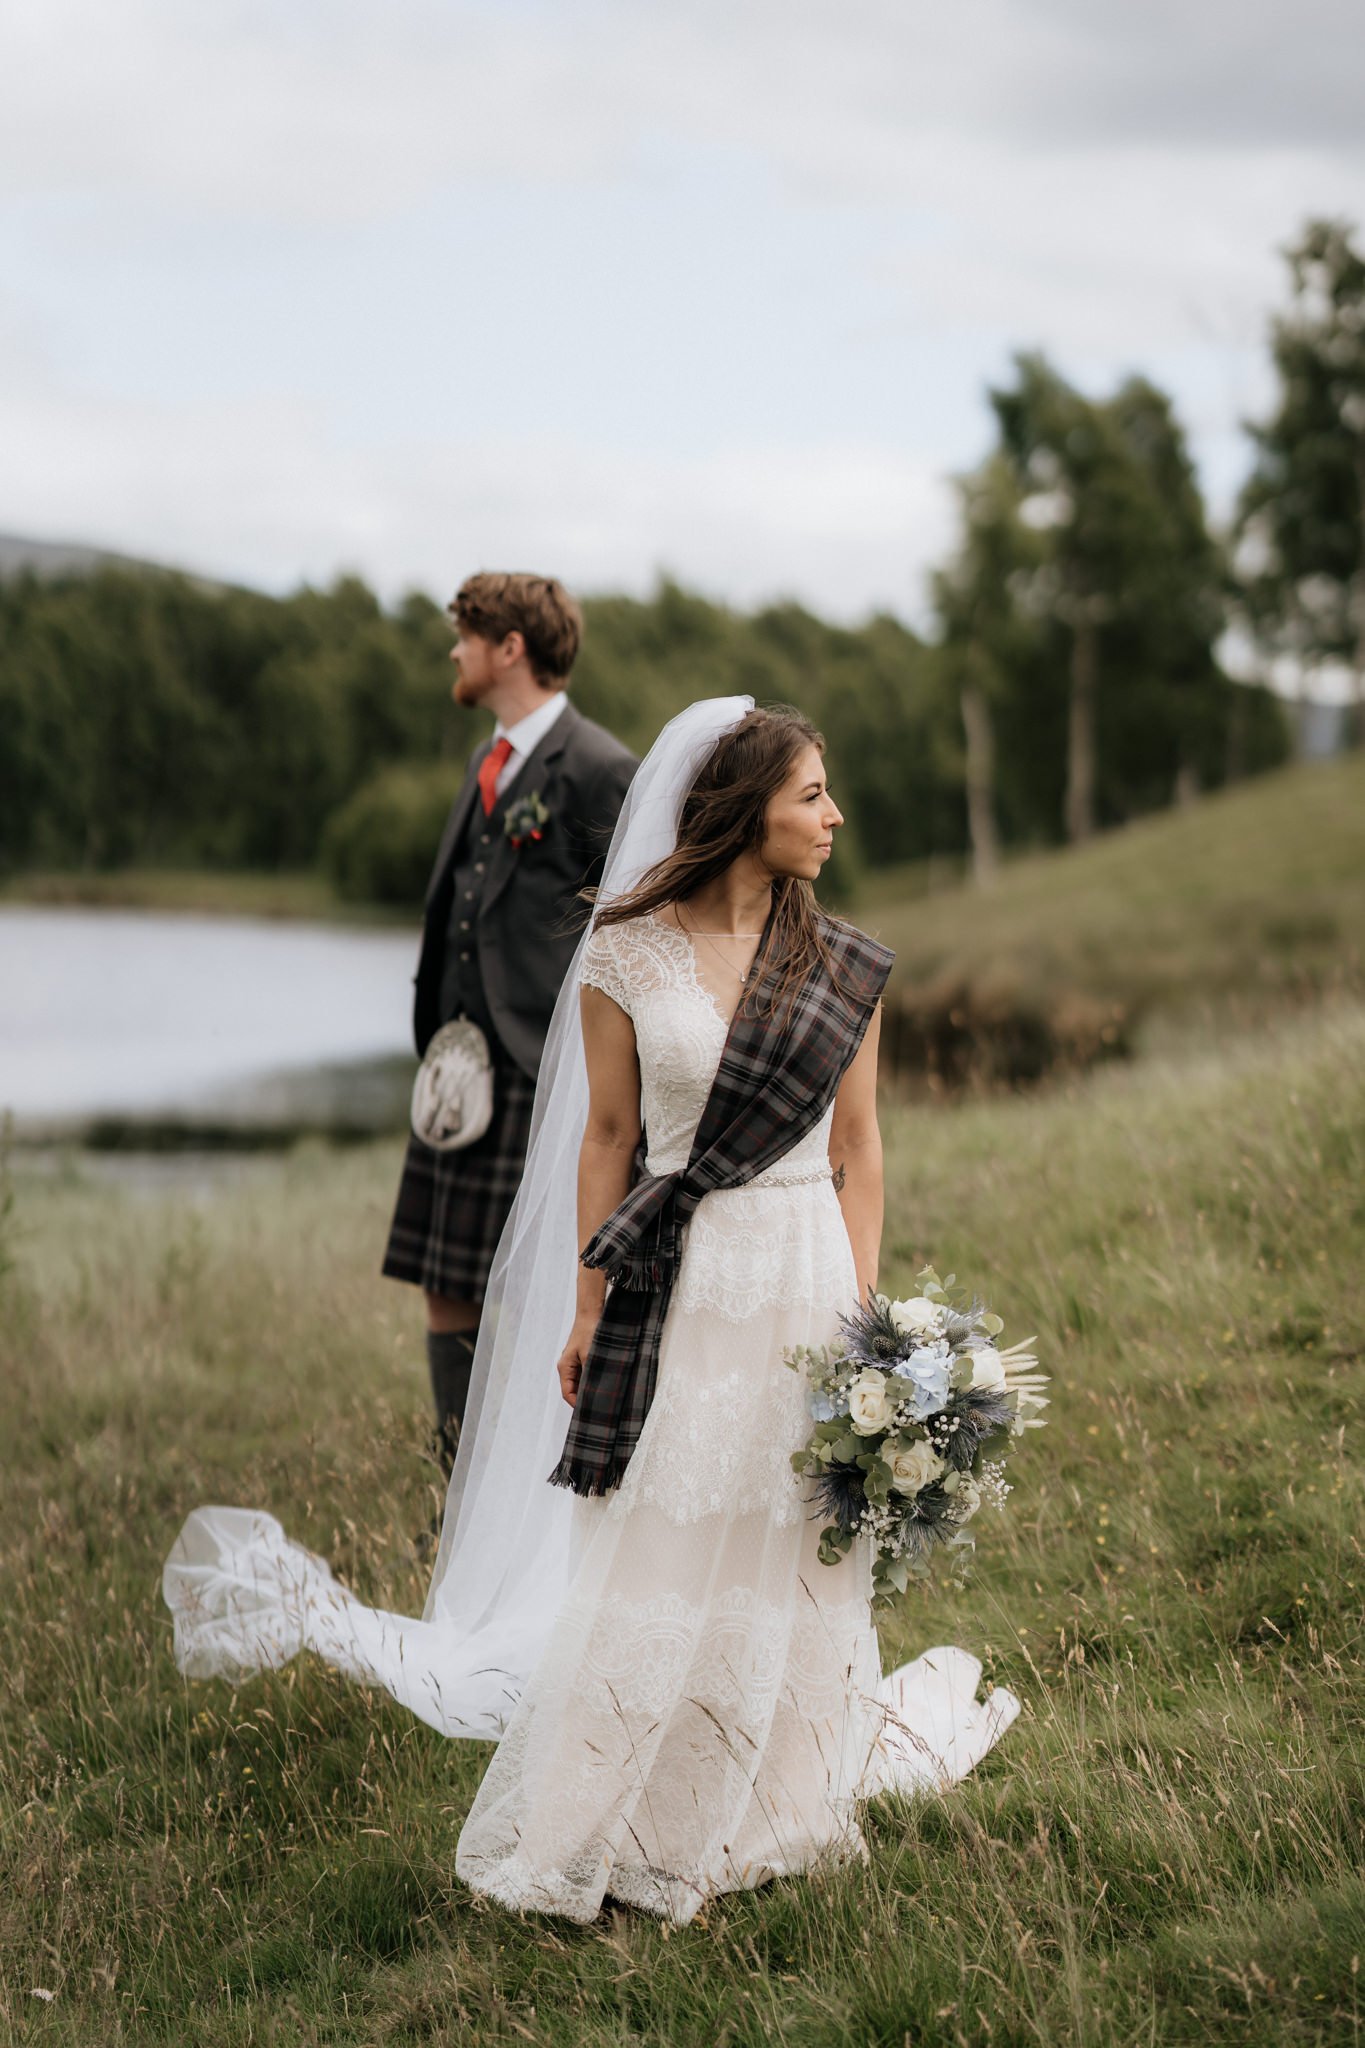 Glen Clova Hotel wedding photography | Aberdeenshire wedding photographer and videographer-49.jpg